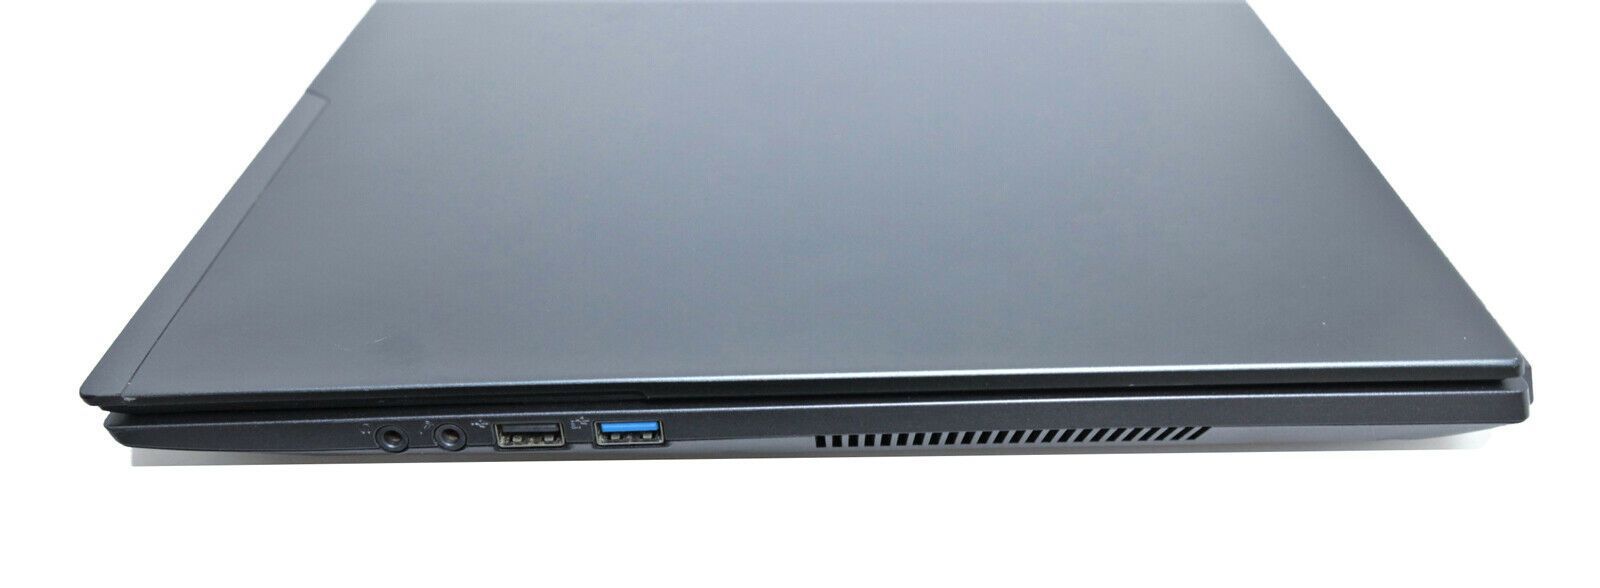 Clevo N870HP 17.3" Gaming Laptop: GTX 1060, Core i5 Quad, 240GB SSD+HDD - CruiseTech